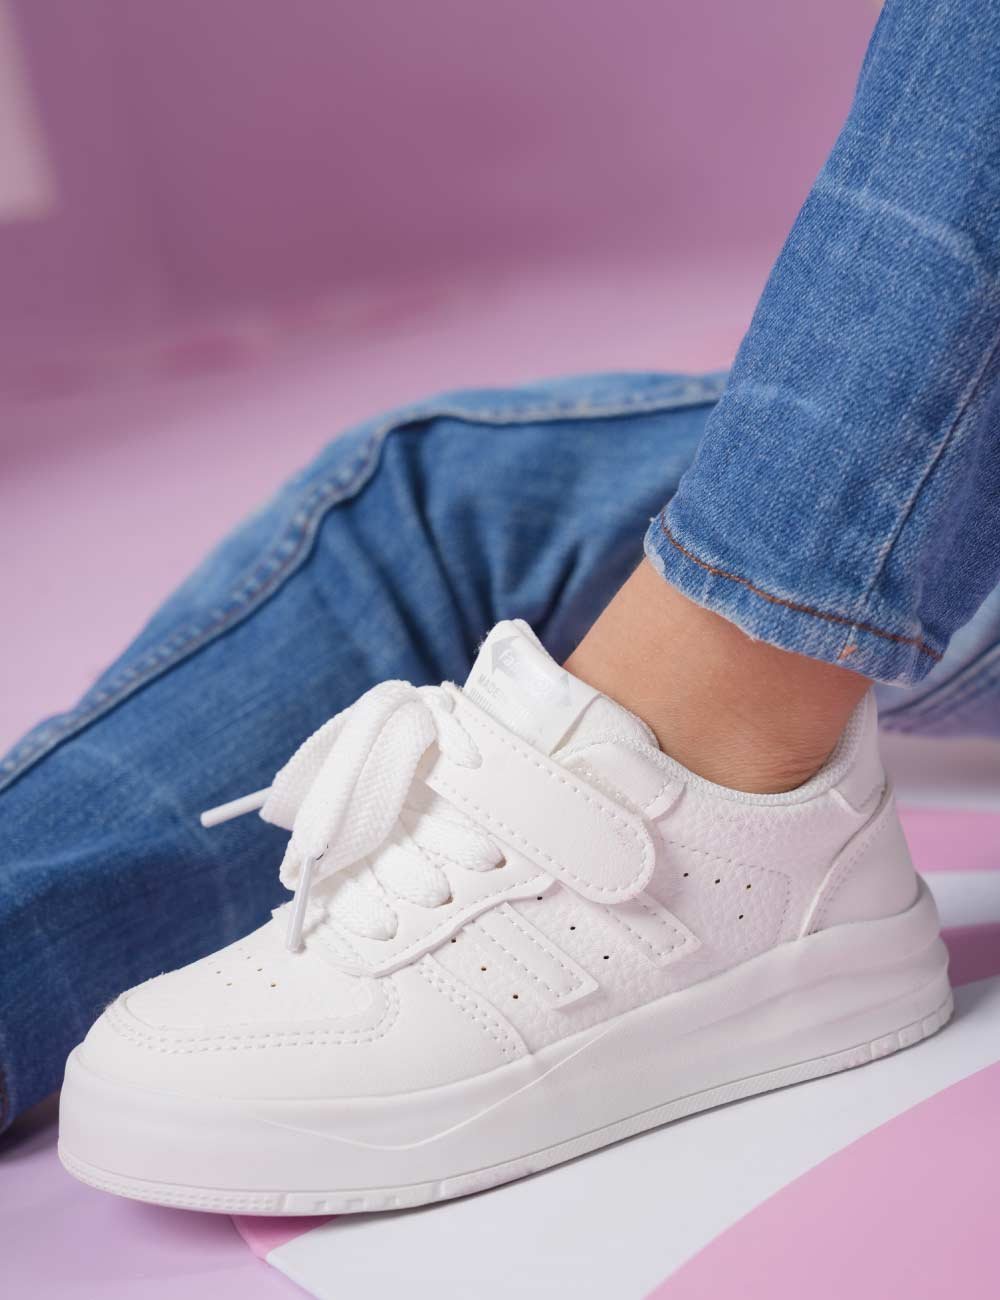 Sneakers à scratch filles-garçons Joliesse Tunisie